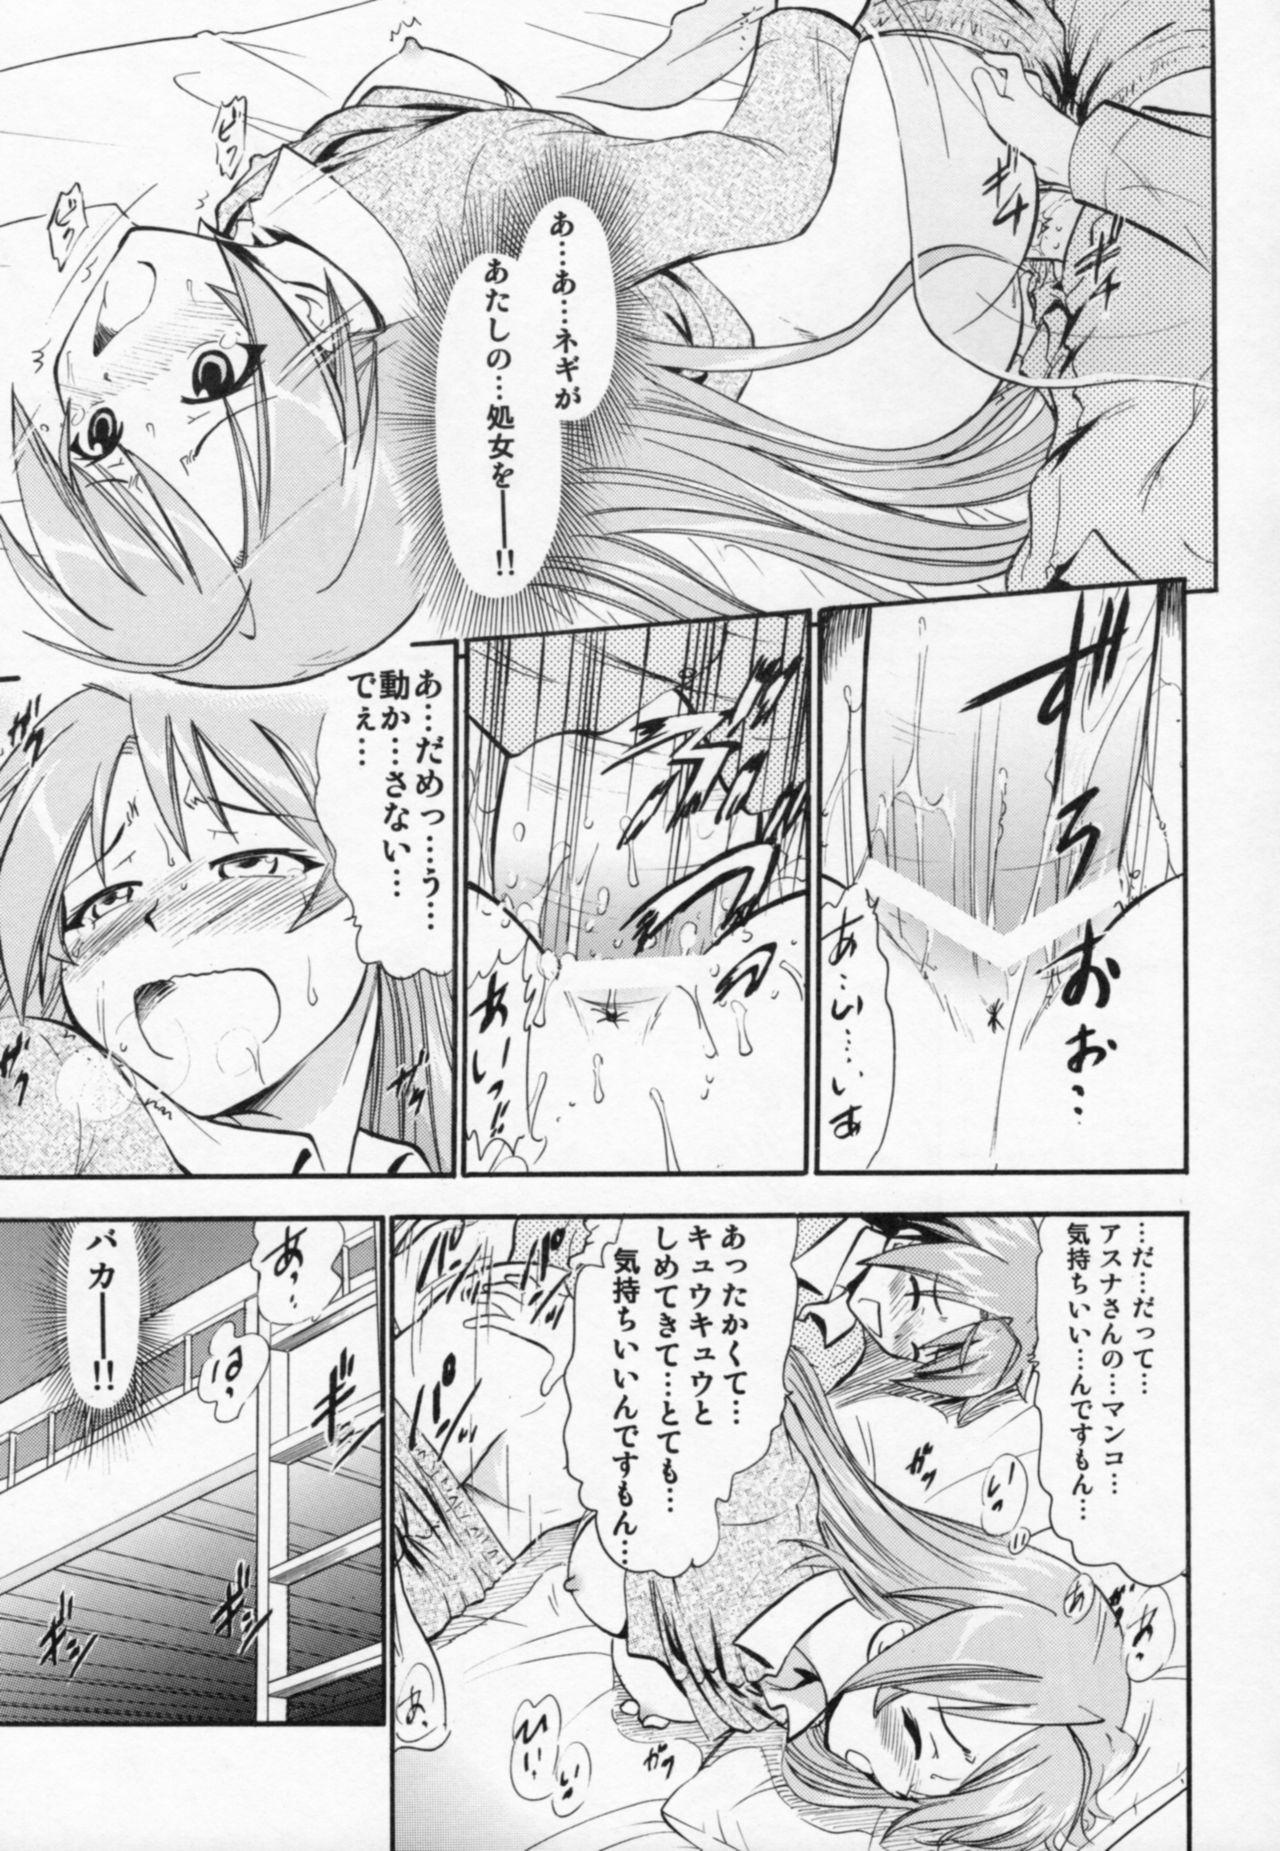 Scandal Etsuraku no Asuna - Mahou sensei negima Vergon - Page 10